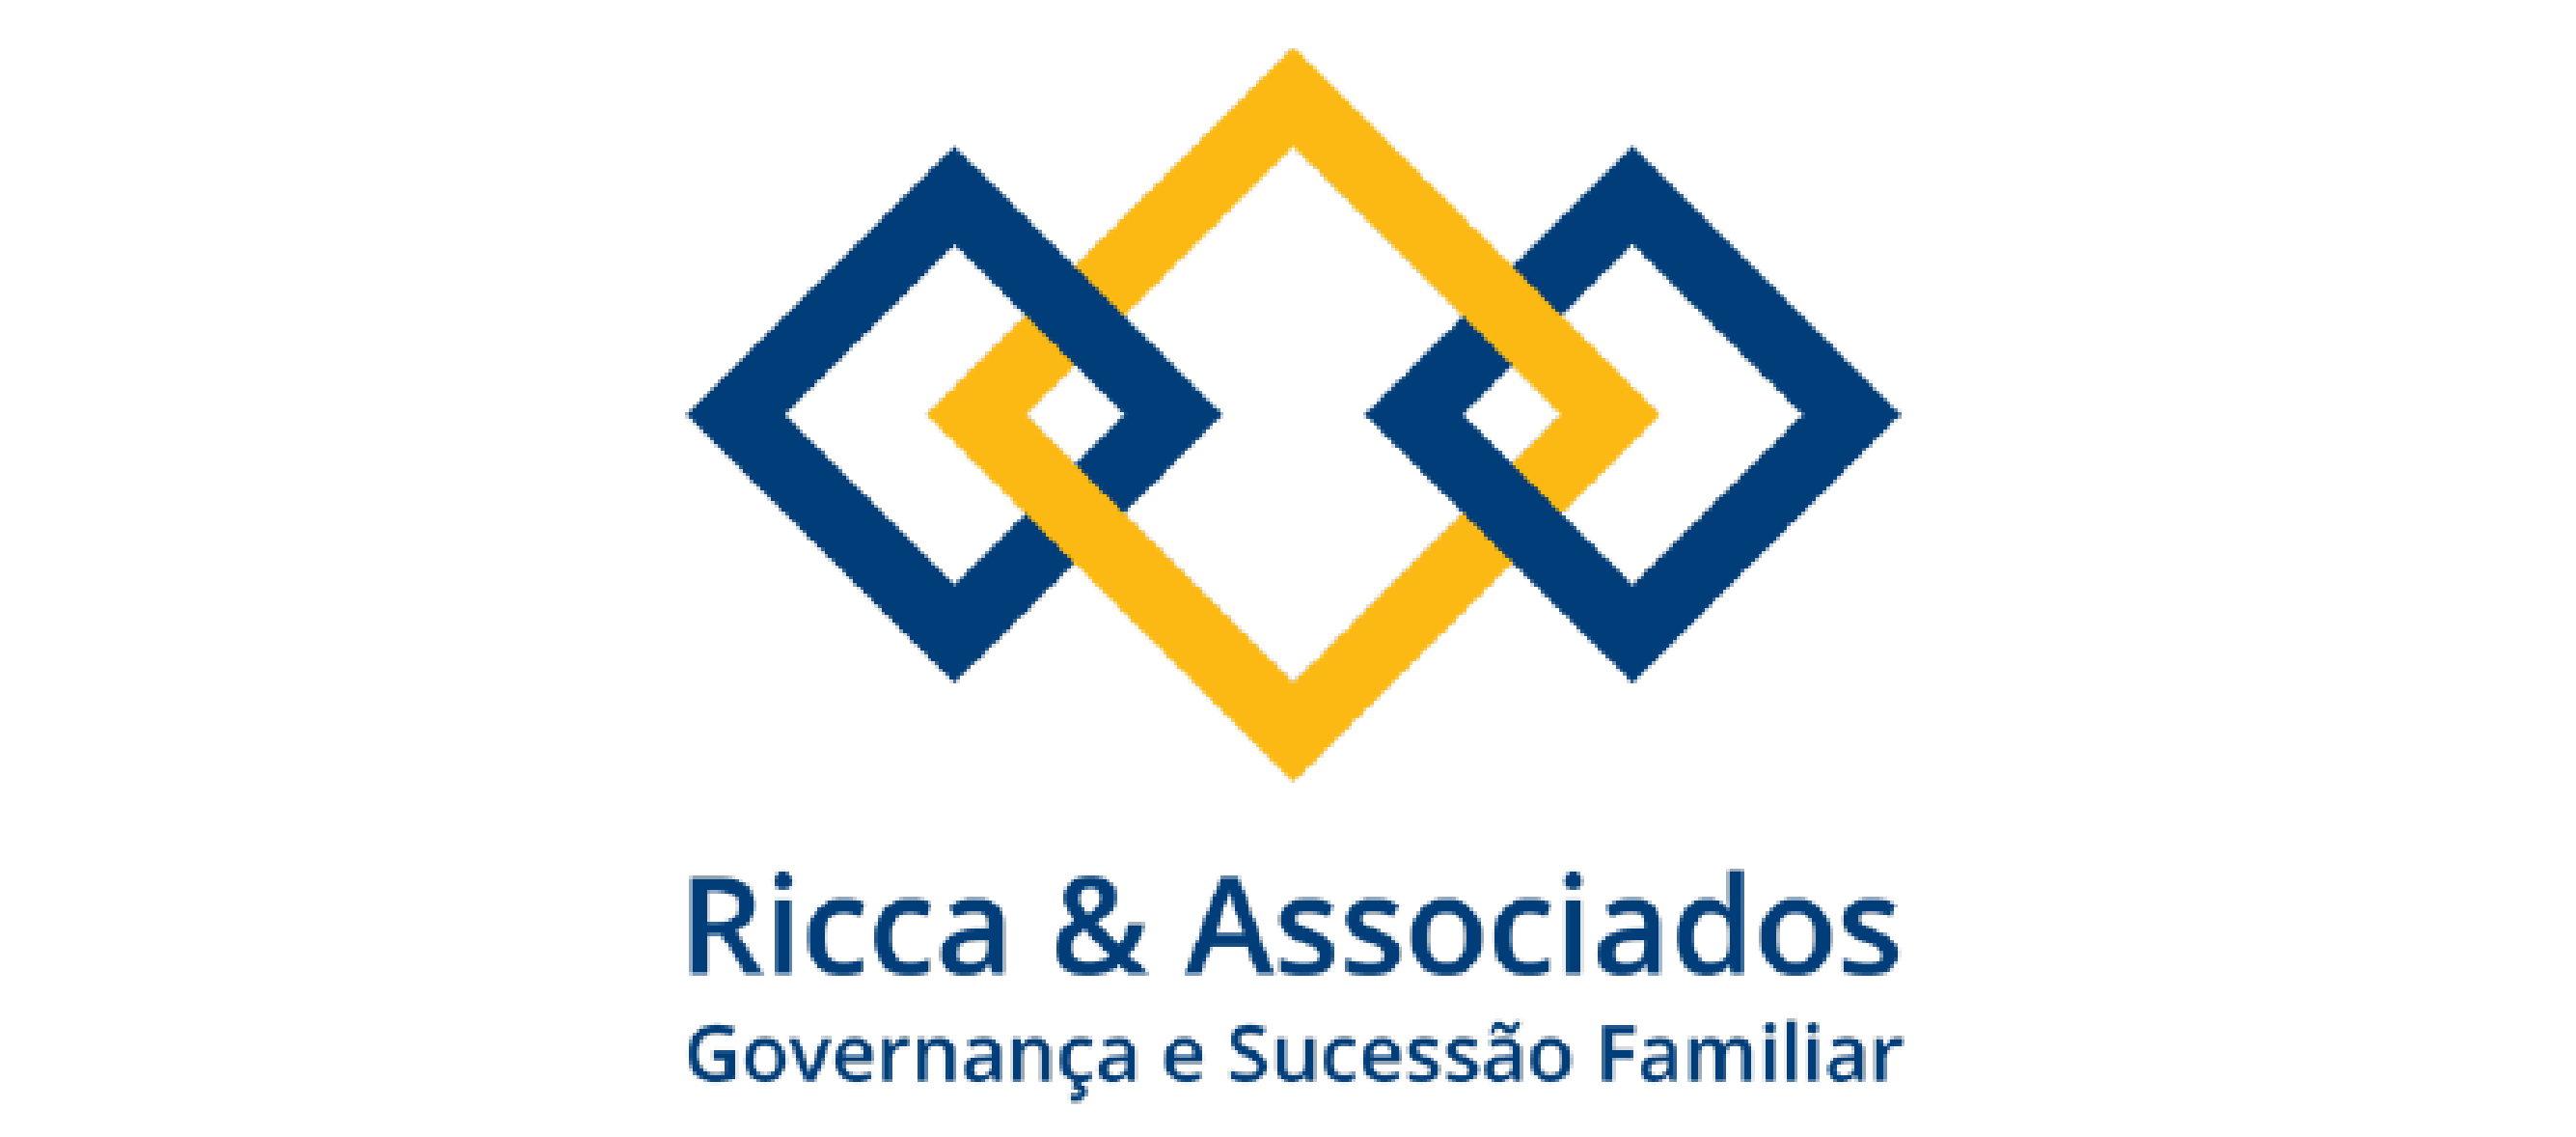 Ricca & Associados - Governança e Sucesso Familiar